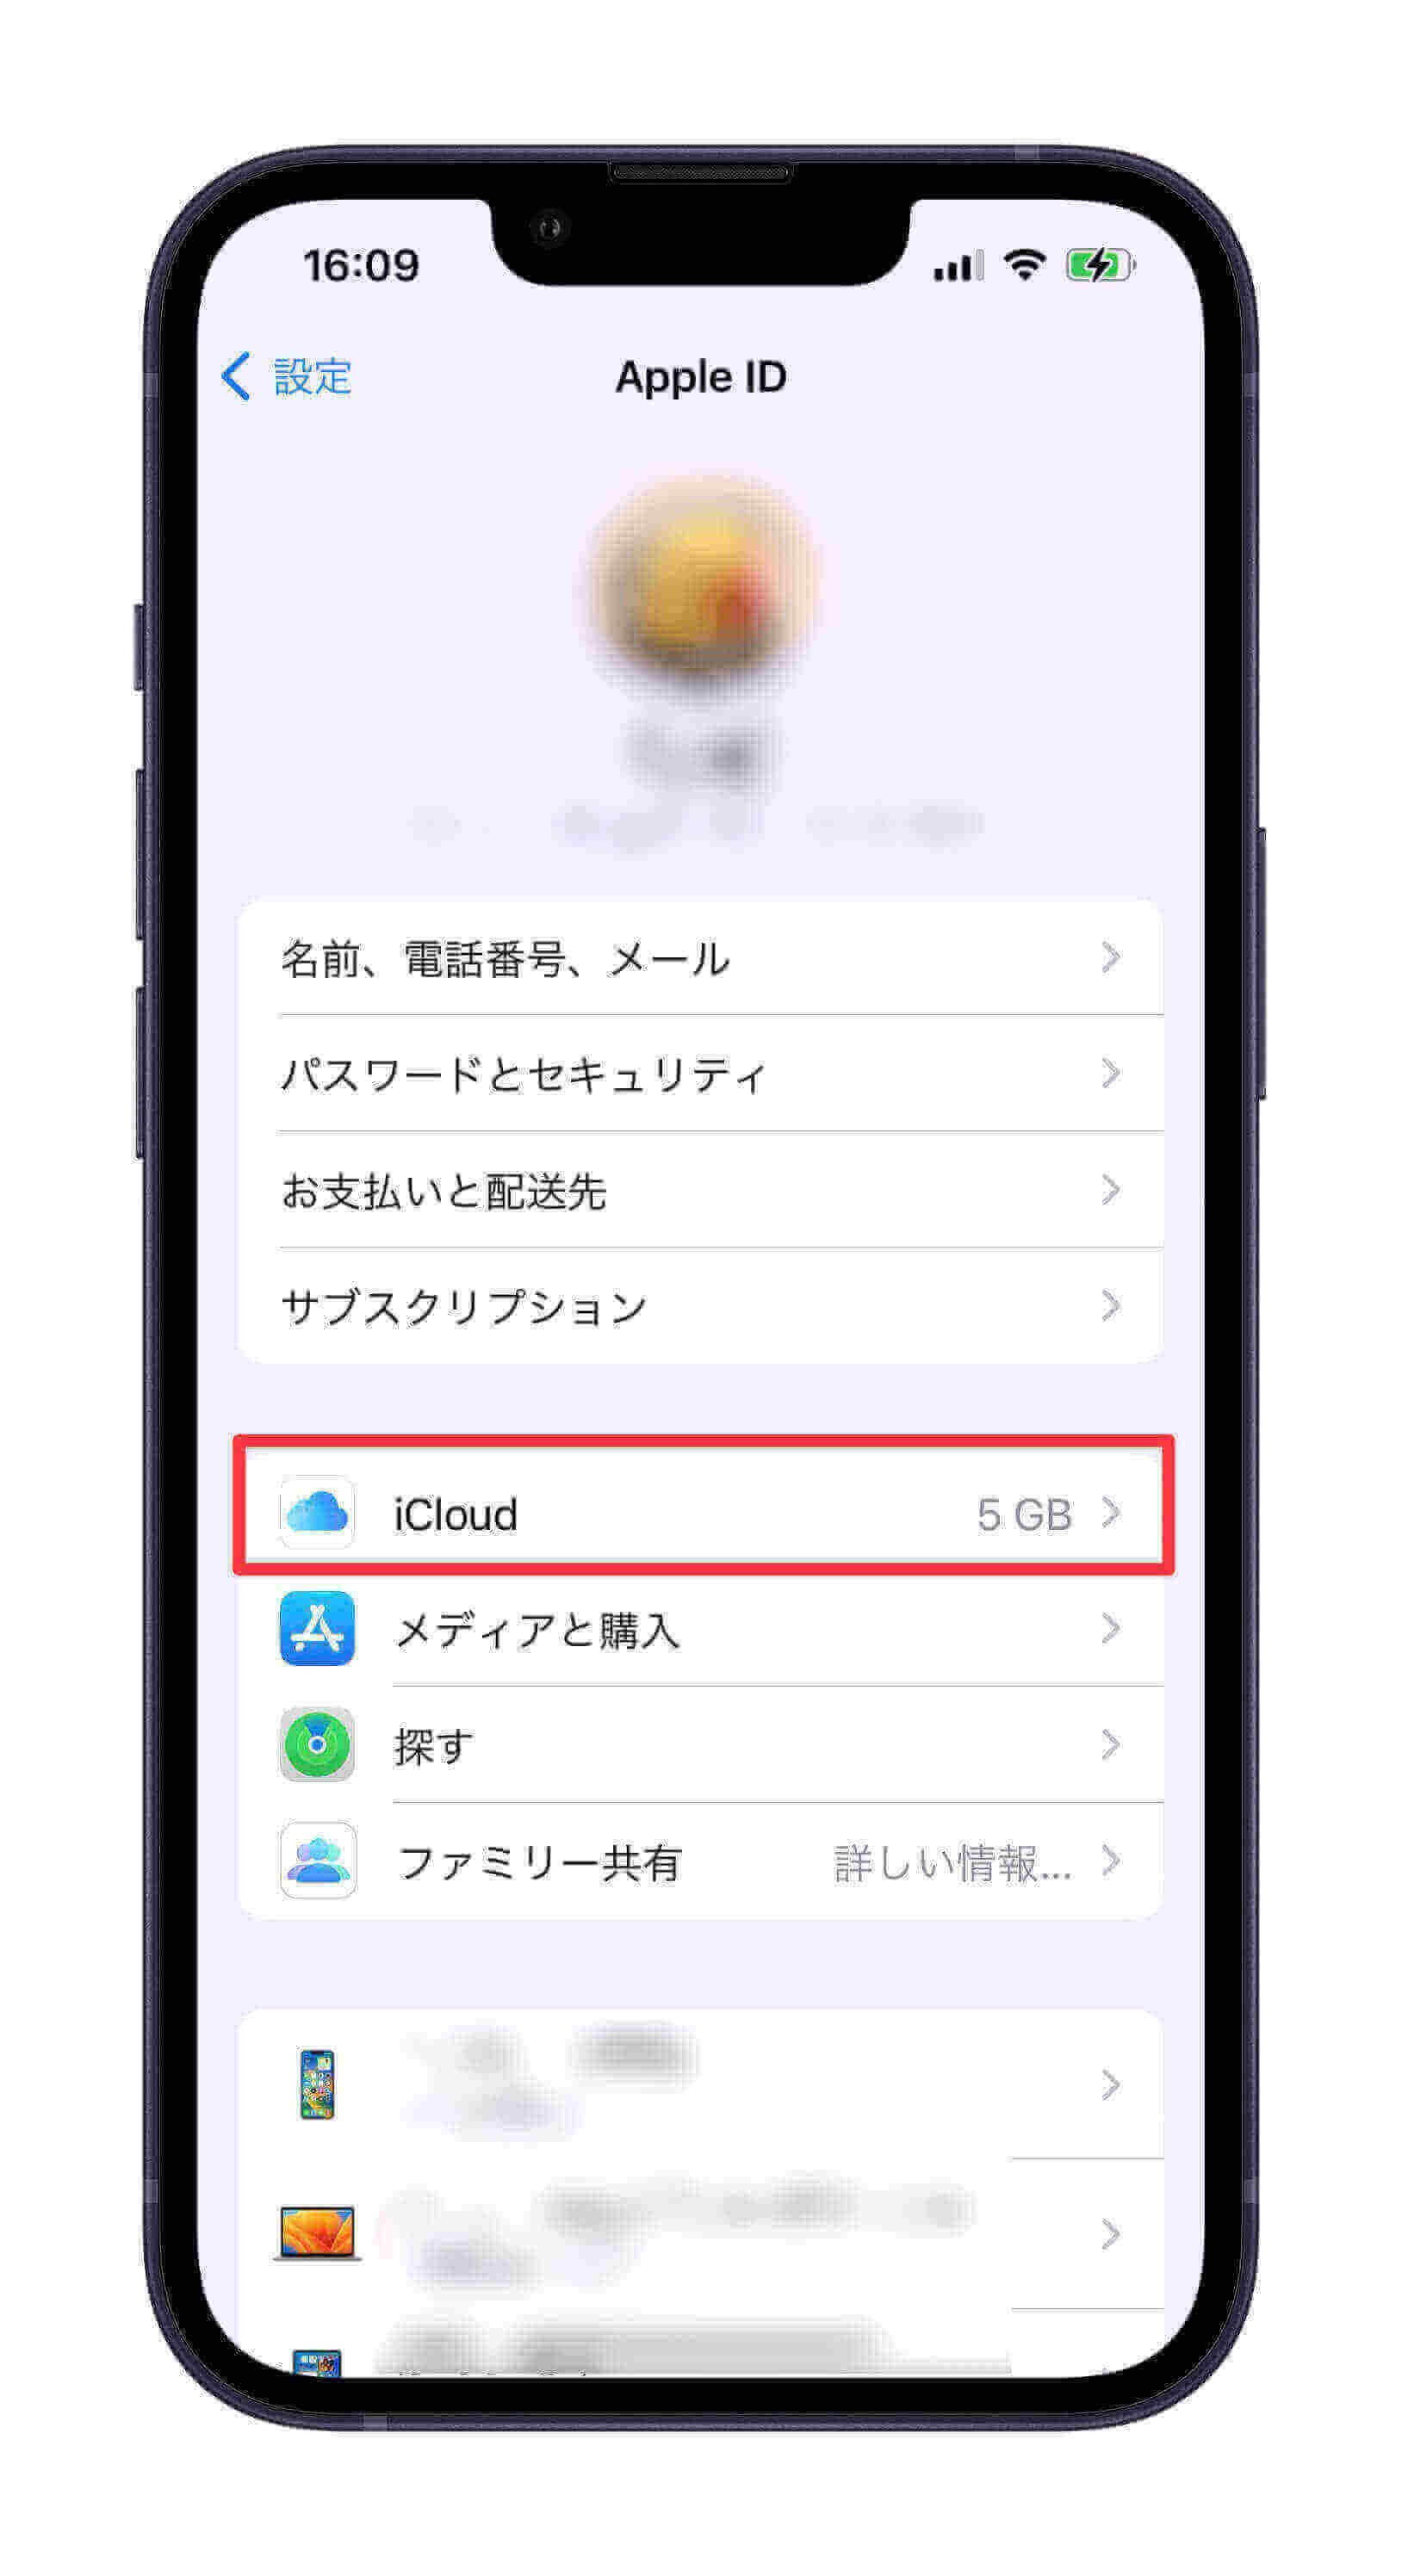 「iCloud」を選択